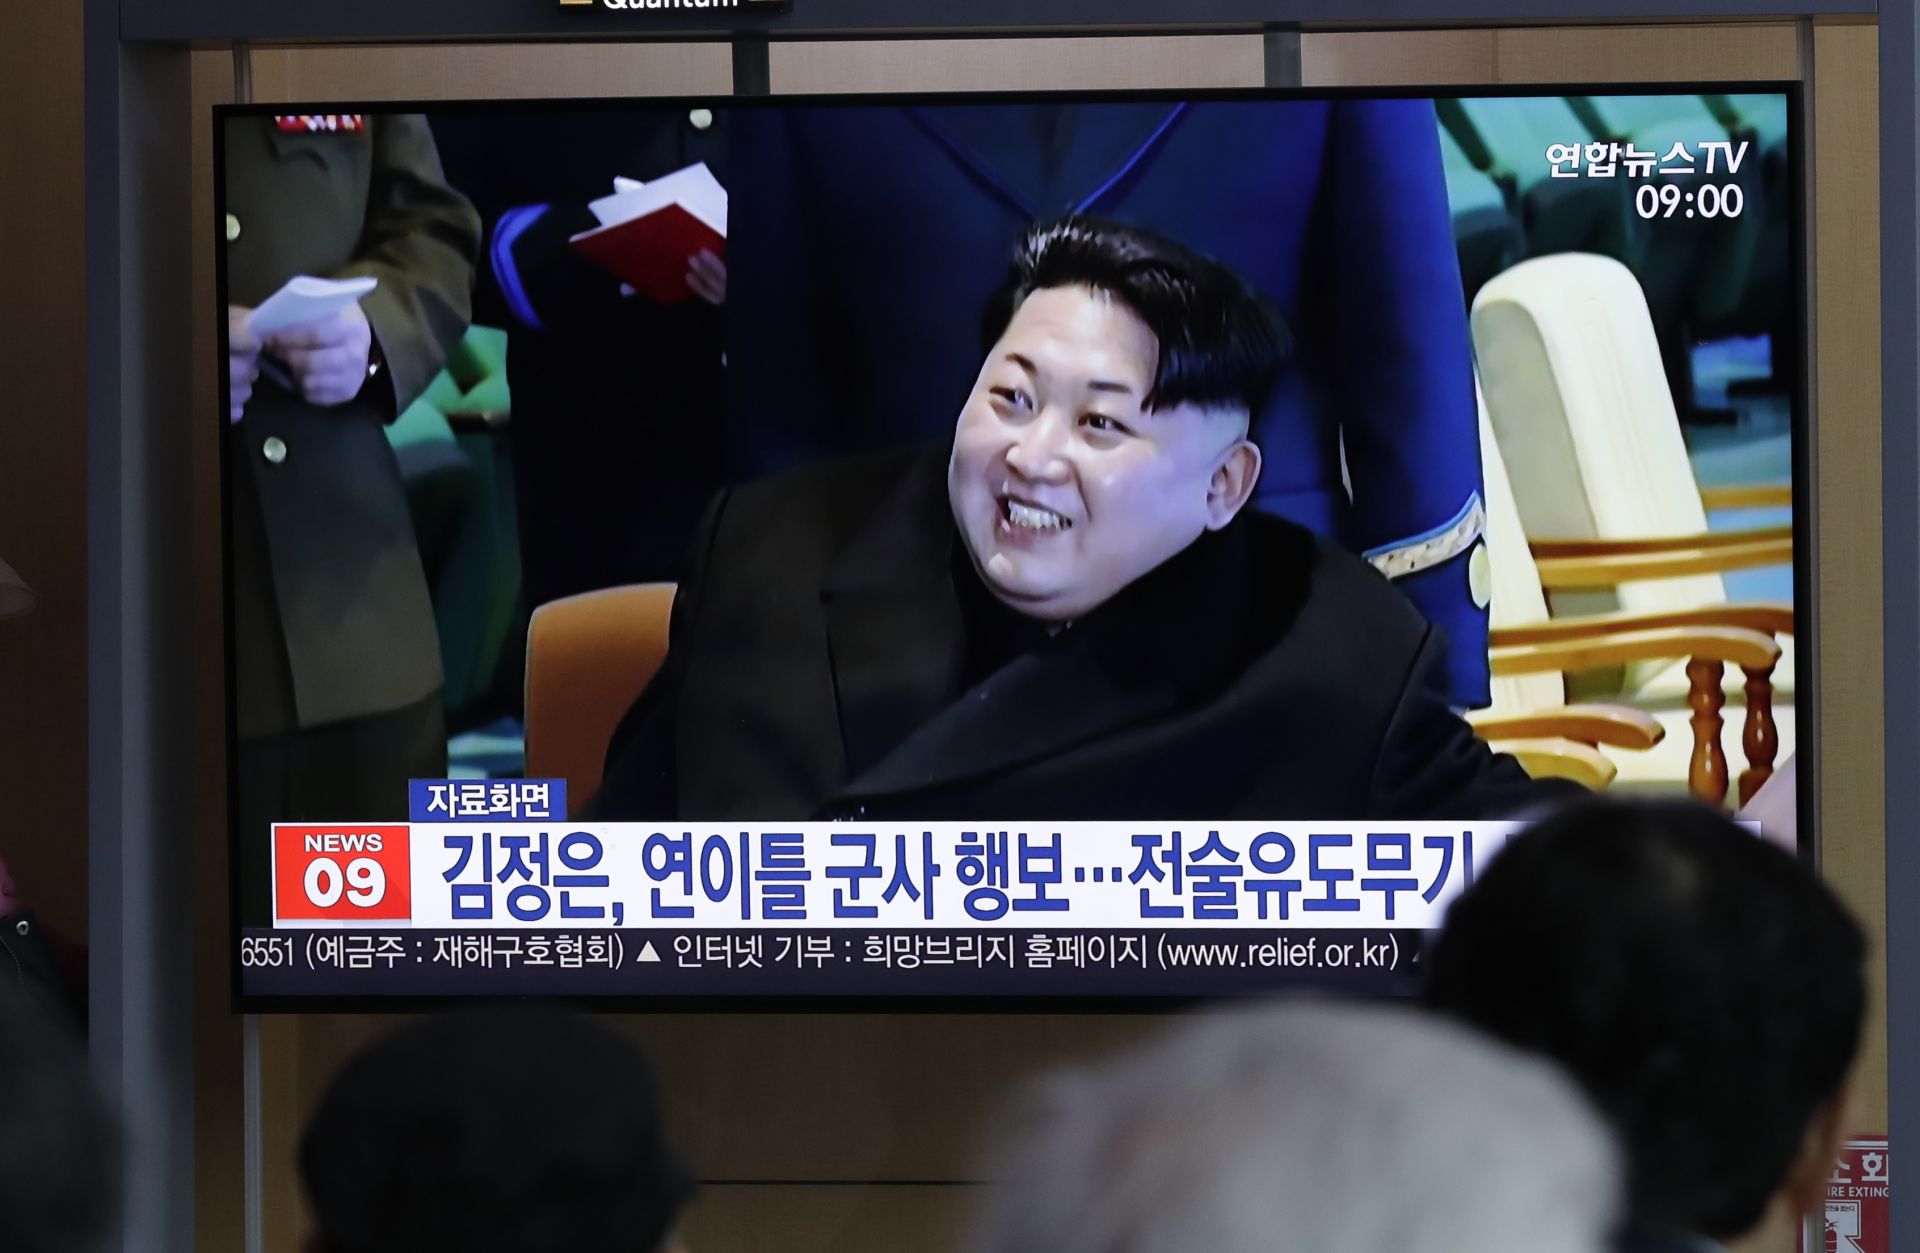 Лидерът на Северна Корея видимо беше доволен, показаха кадри по държавната телевизия